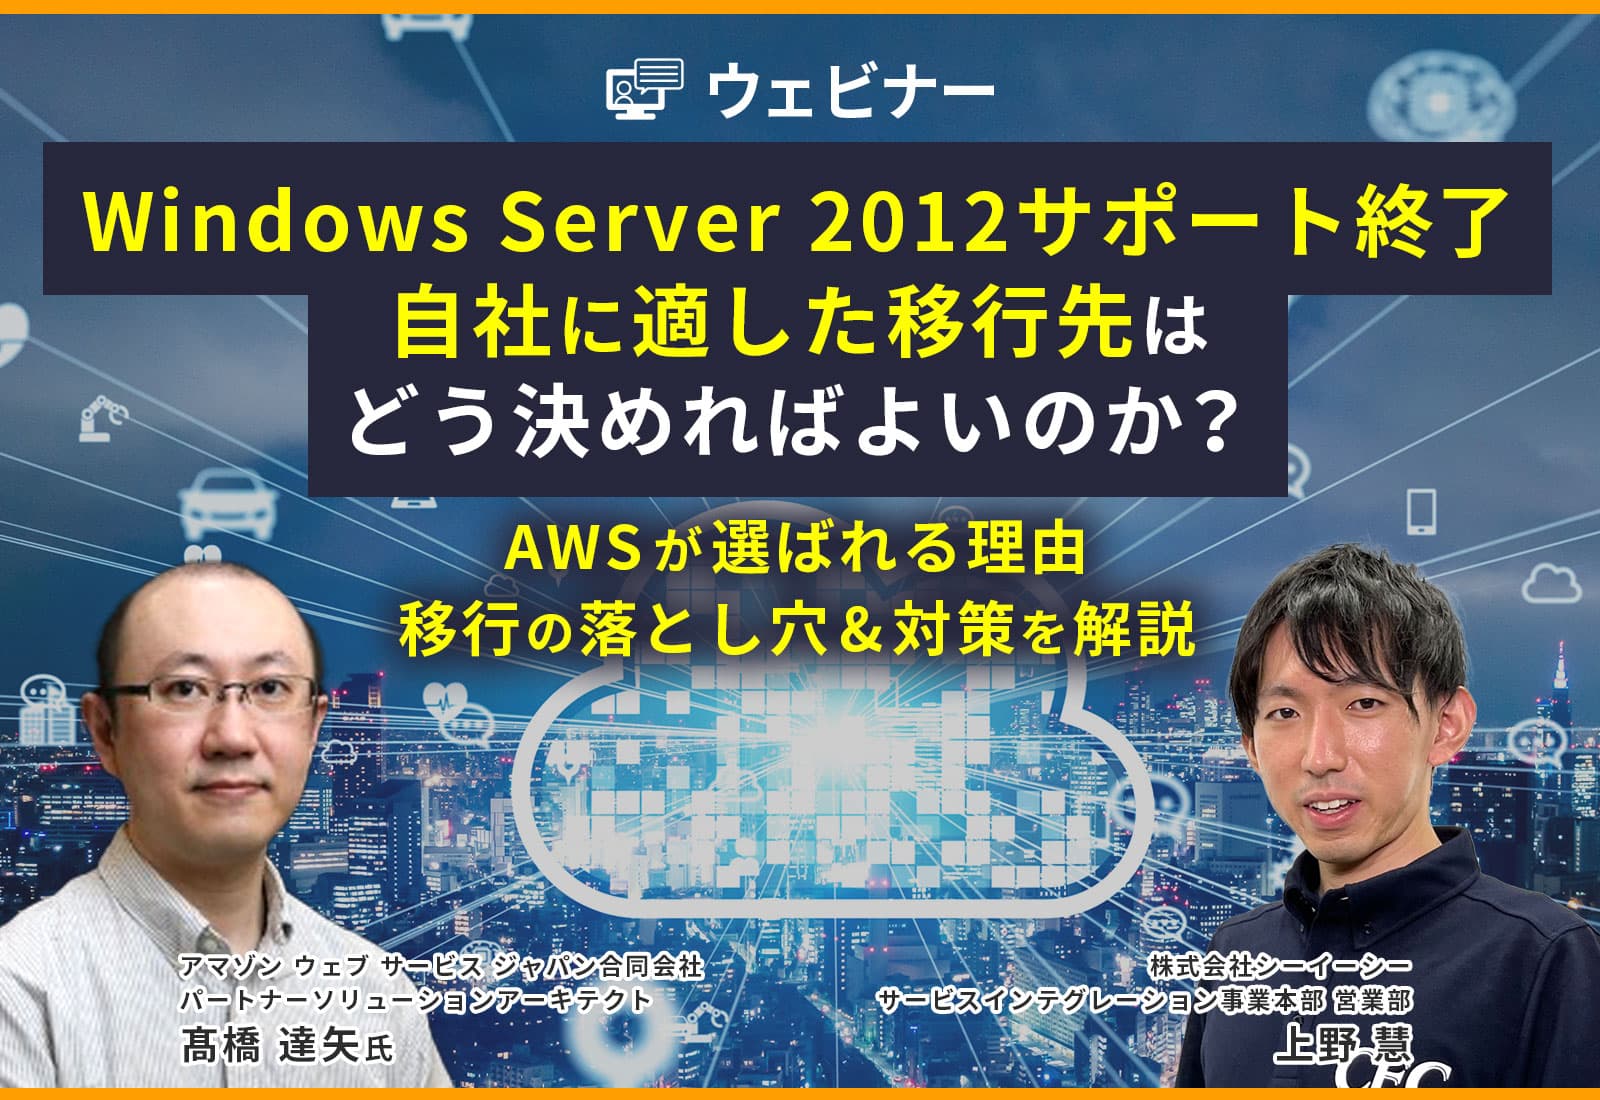 【オンライン視聴】Windows Server 2012サポート終了、自社に適した移行先はどう決めればよいのか？ 〜AWSが選ばれる理由、移行の落とし穴&対策を解説〜